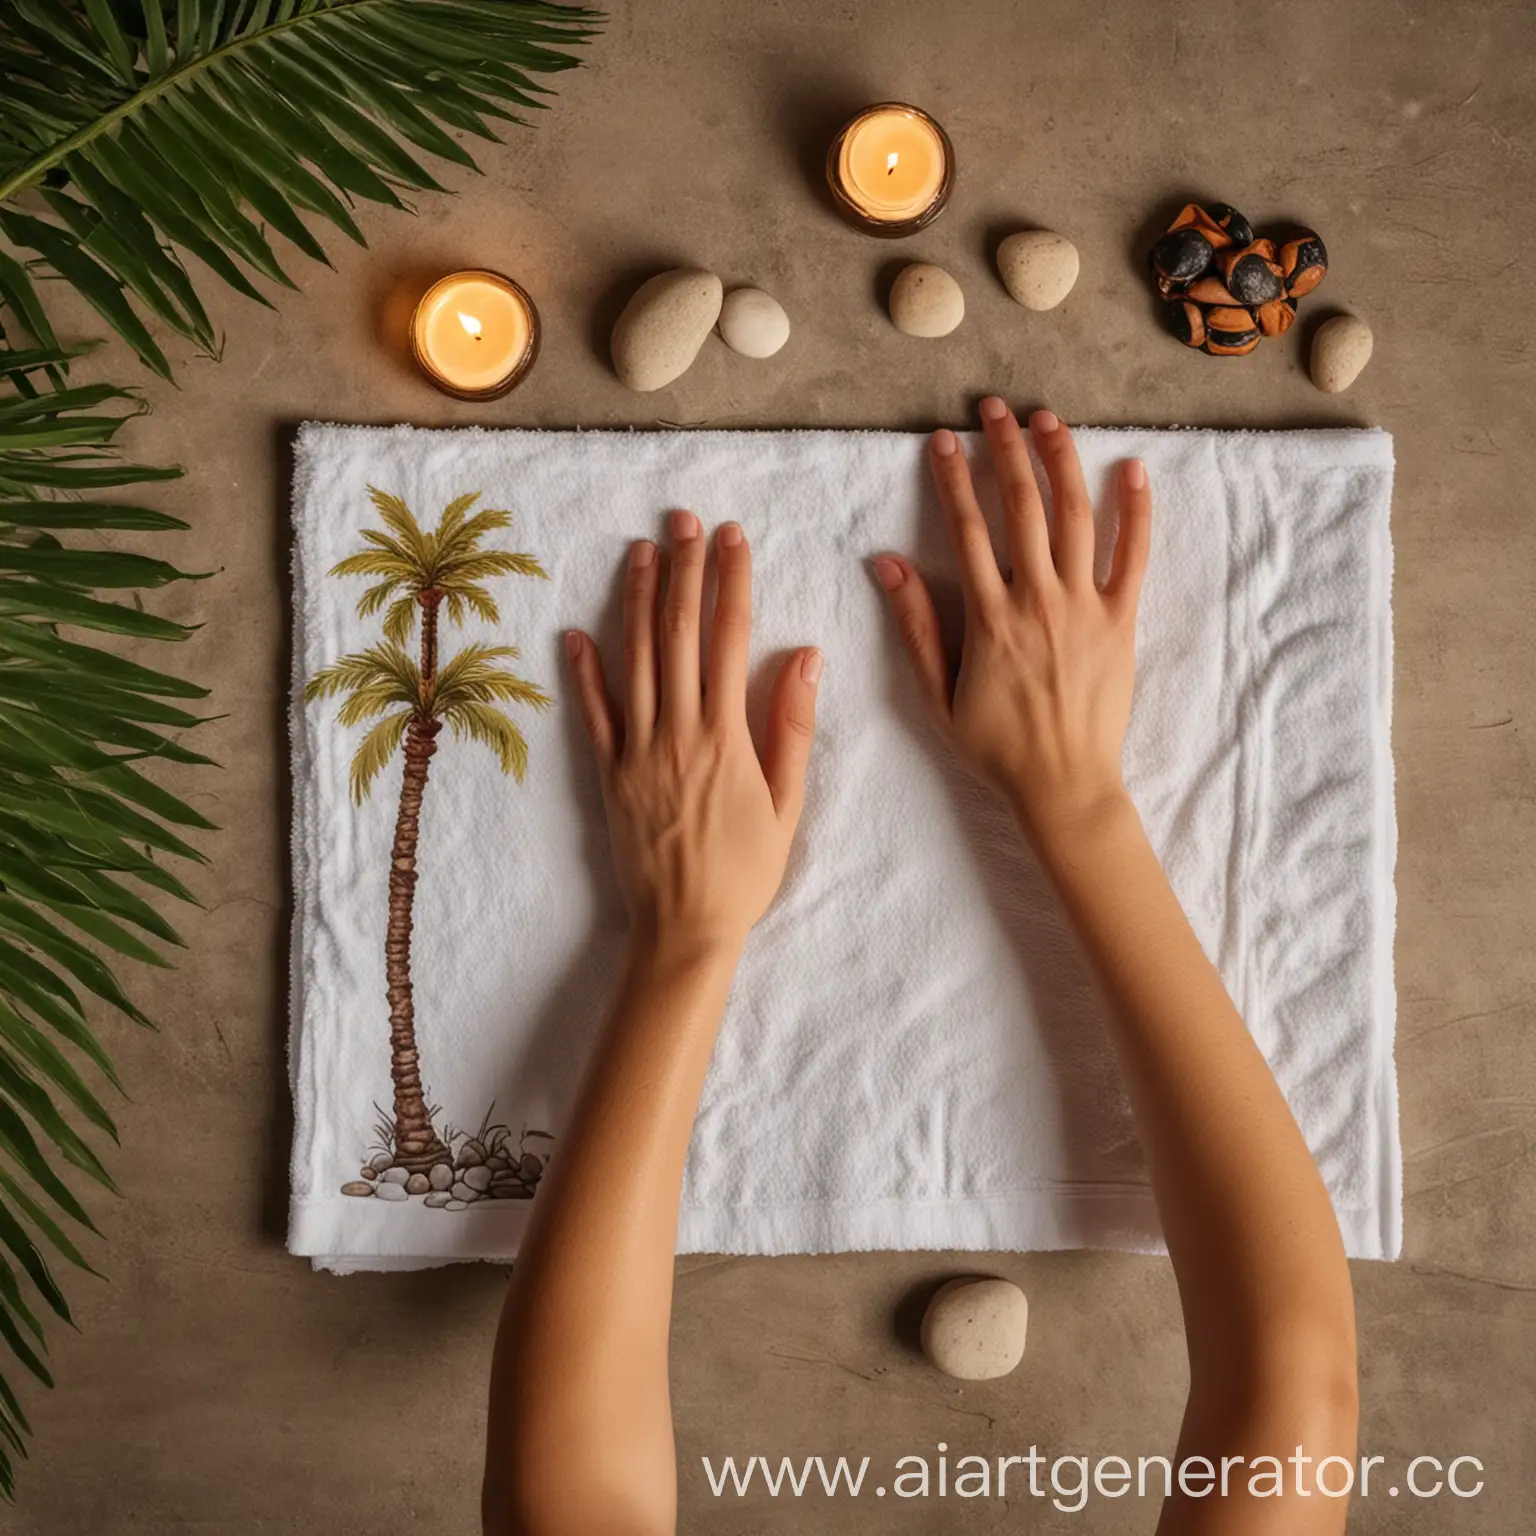 спа процедура для рук, в кадре одна рука, атрибутика свечи и полотенце, камни, пальмы